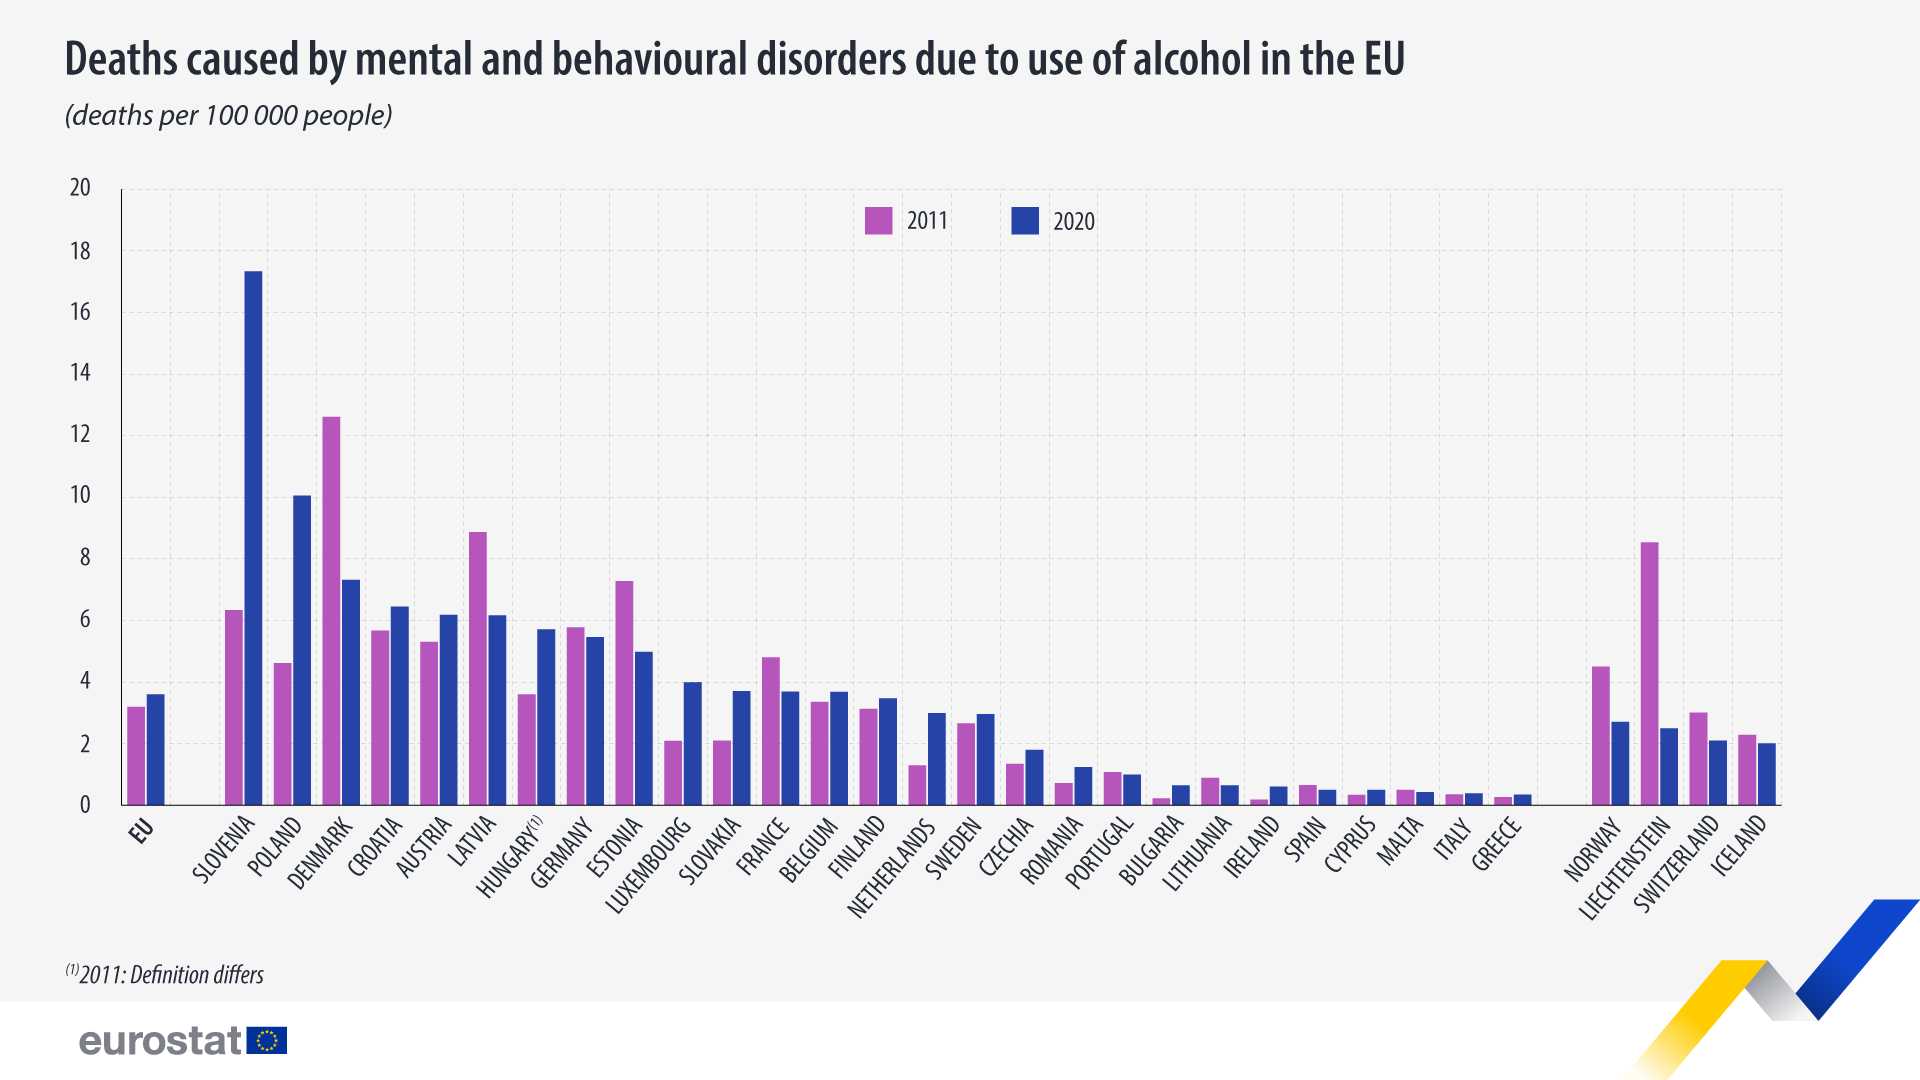 Søjlediagram: Dødsfald forårsaget af psykiske og adfærdsmæssige forstyrrelser på grund af brug af alkohol i EU, dødsrate